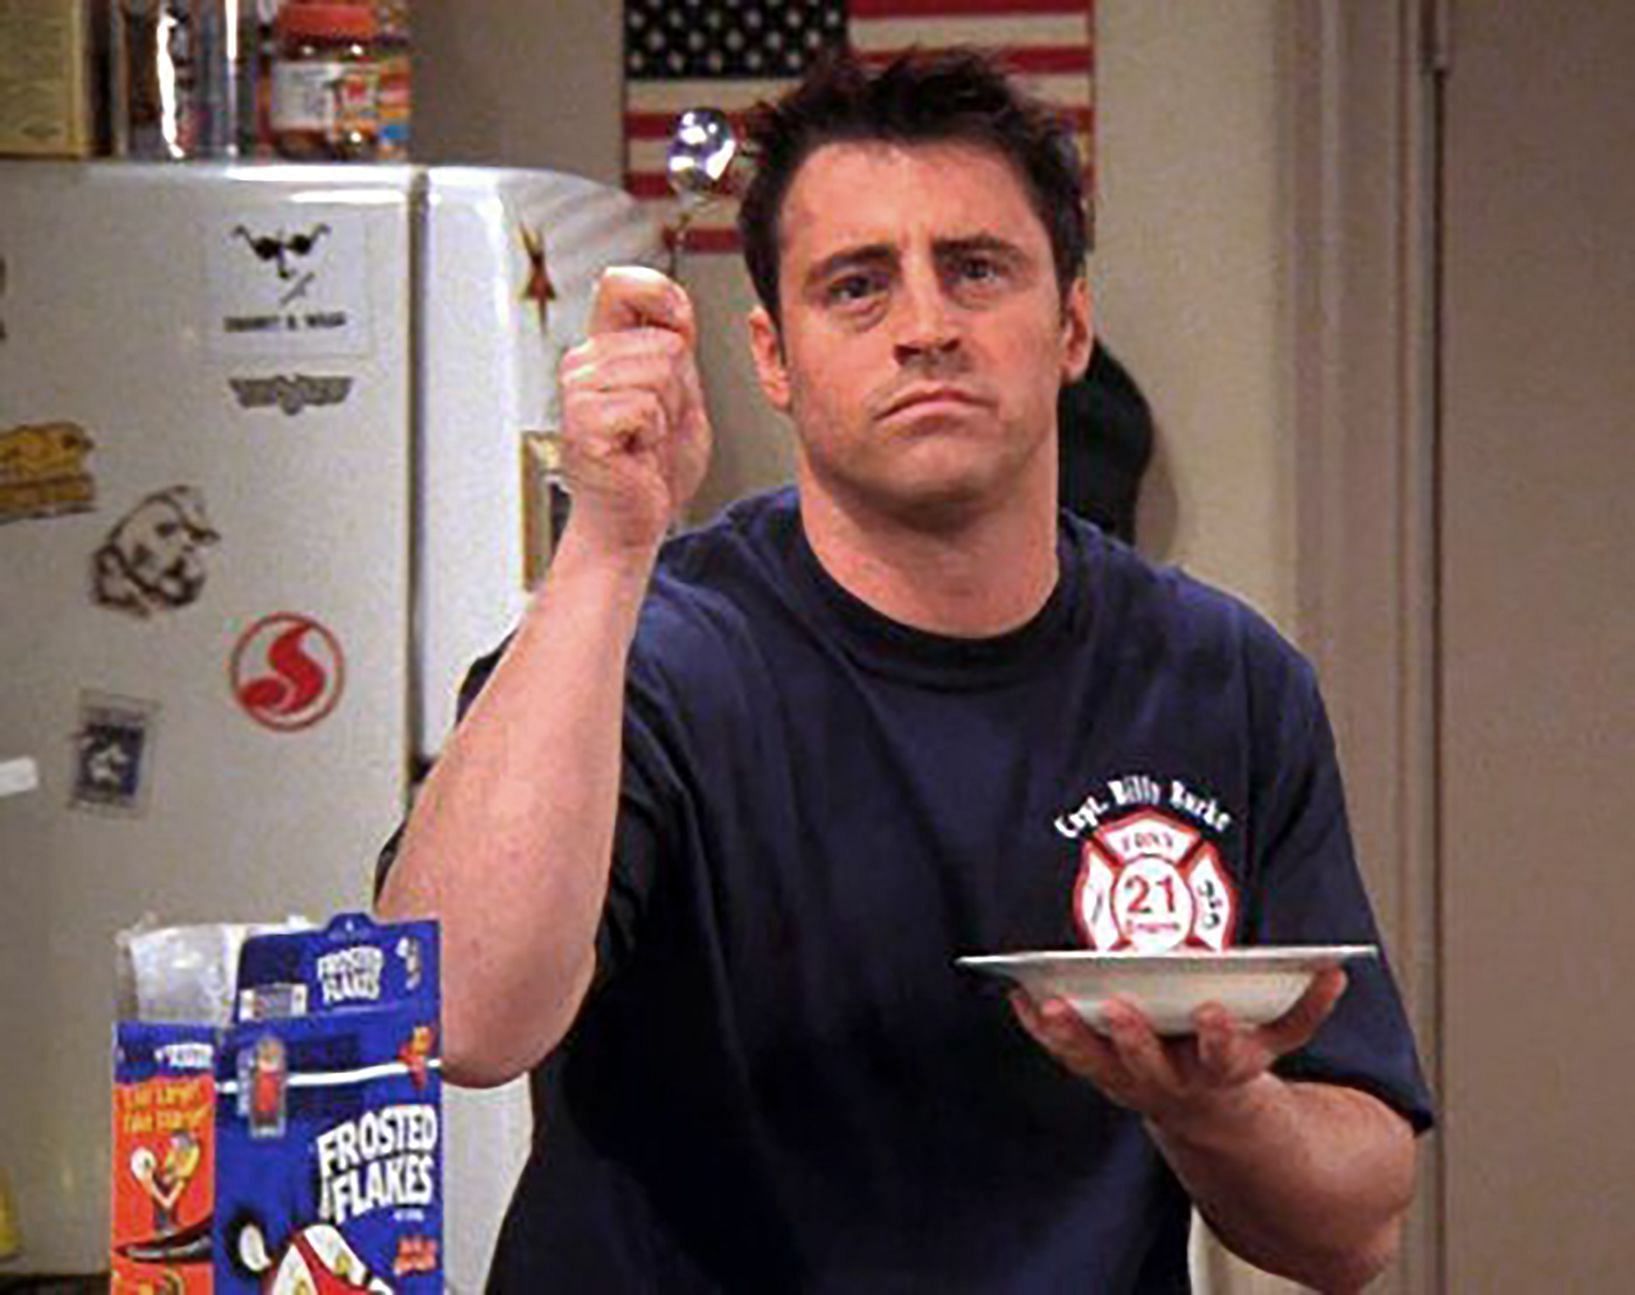 Joey wearing a FDNY tshirt (Image via NBC)